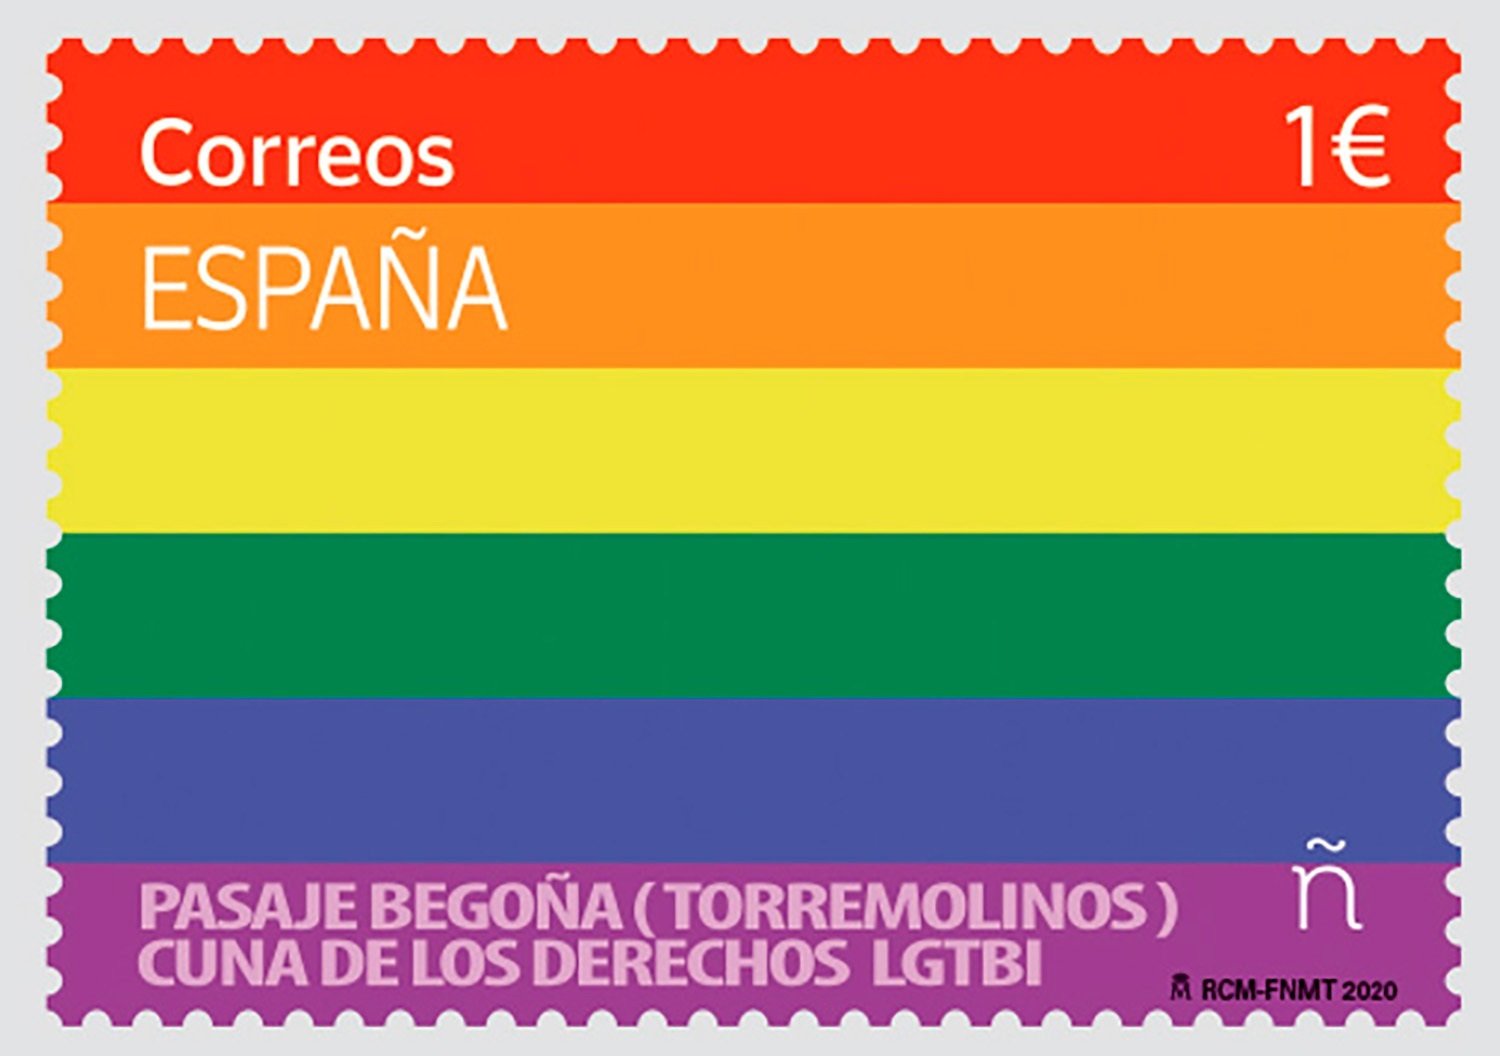 El polémico sello de correos LGTBI que ha irritado a la ultraderecha española